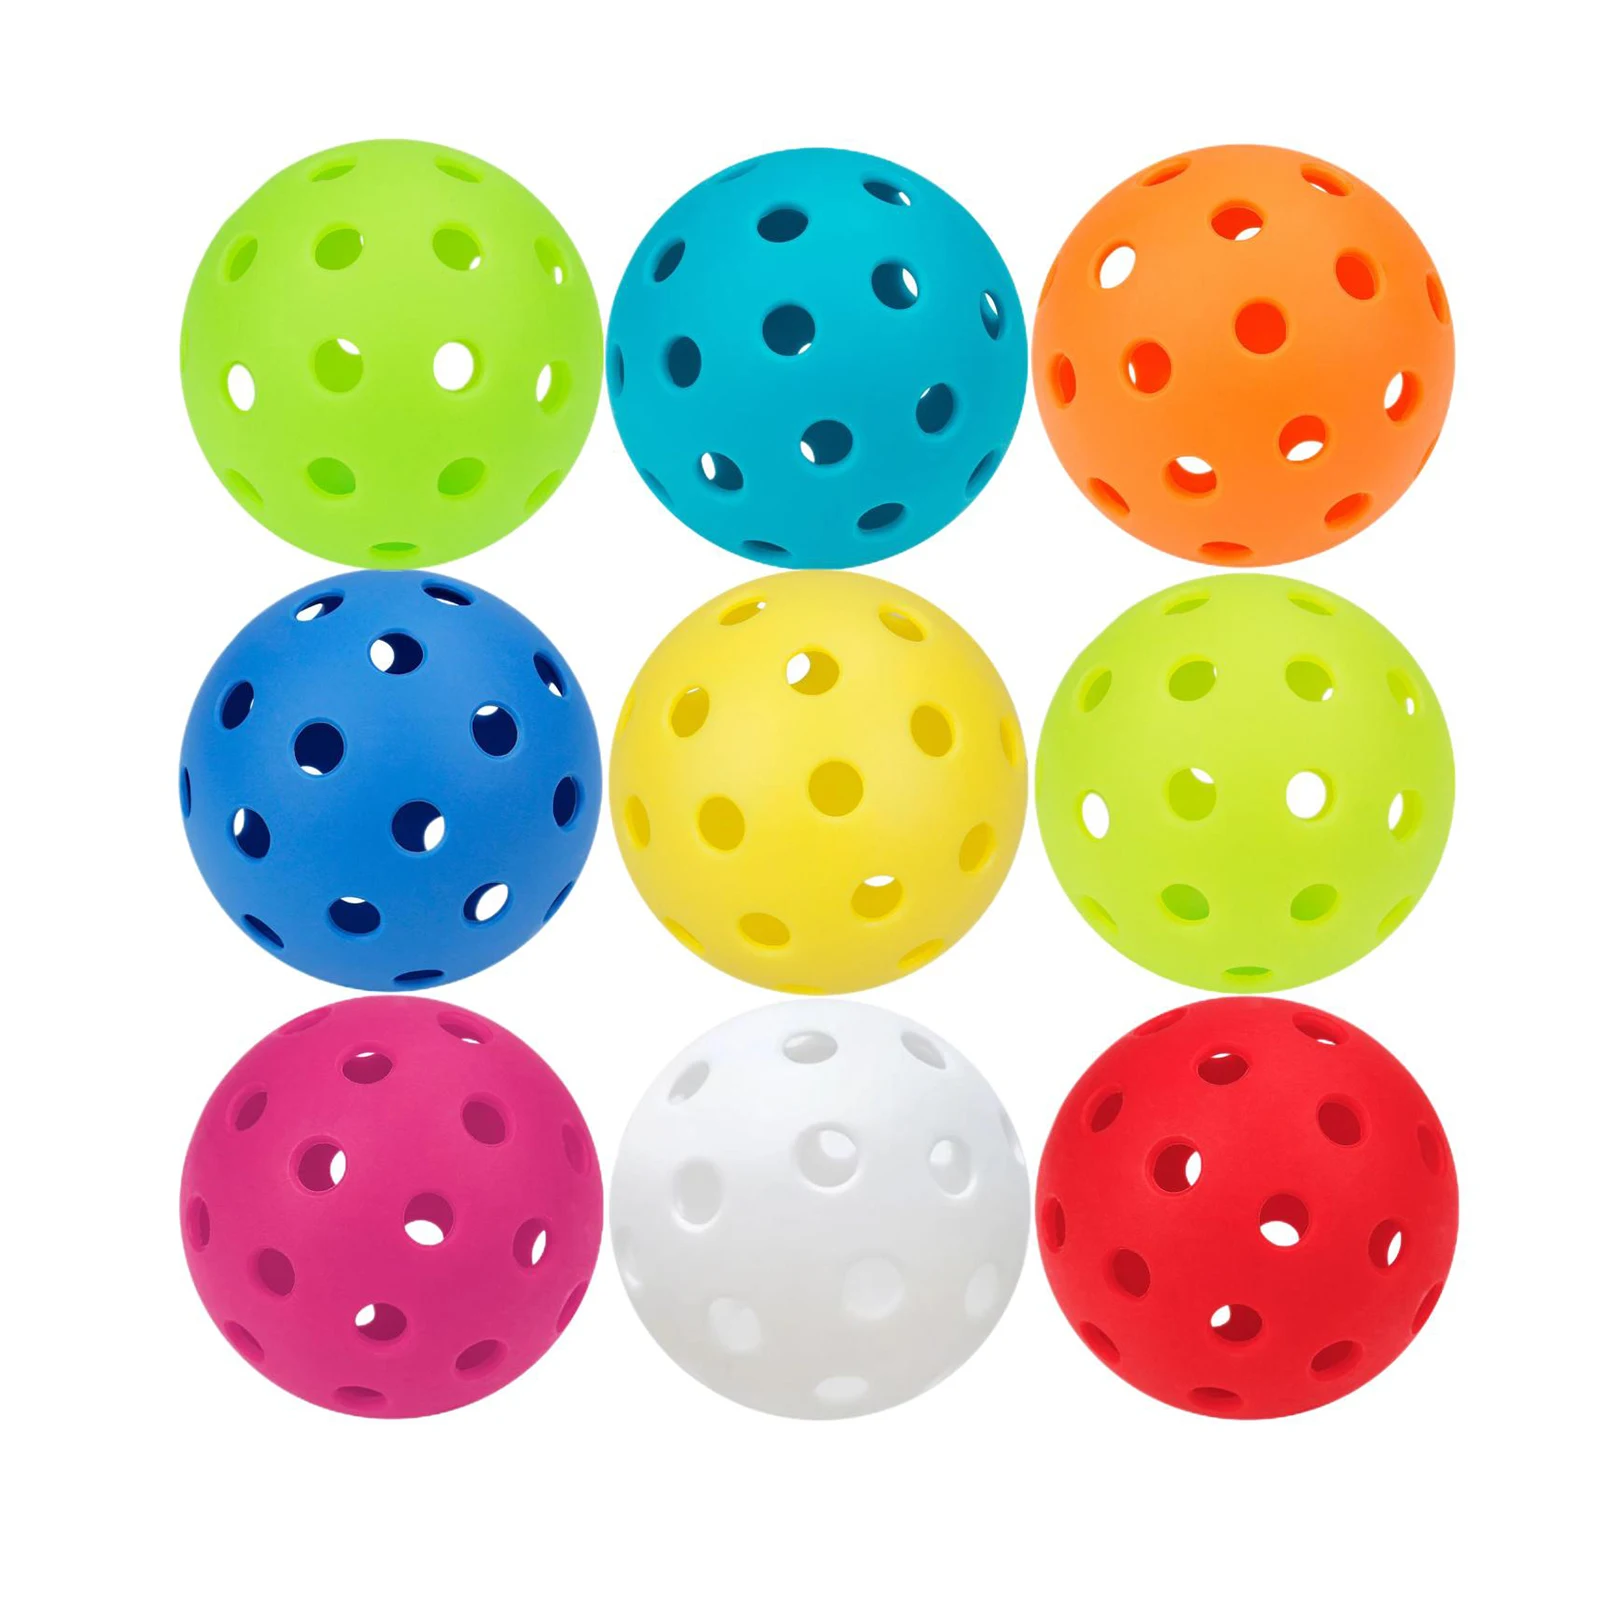 ピックルボール耐久性 USAPA 承認 40 穴屋外回転デュラファスト 40 ピックルボールシームレスプロピックルボールボール